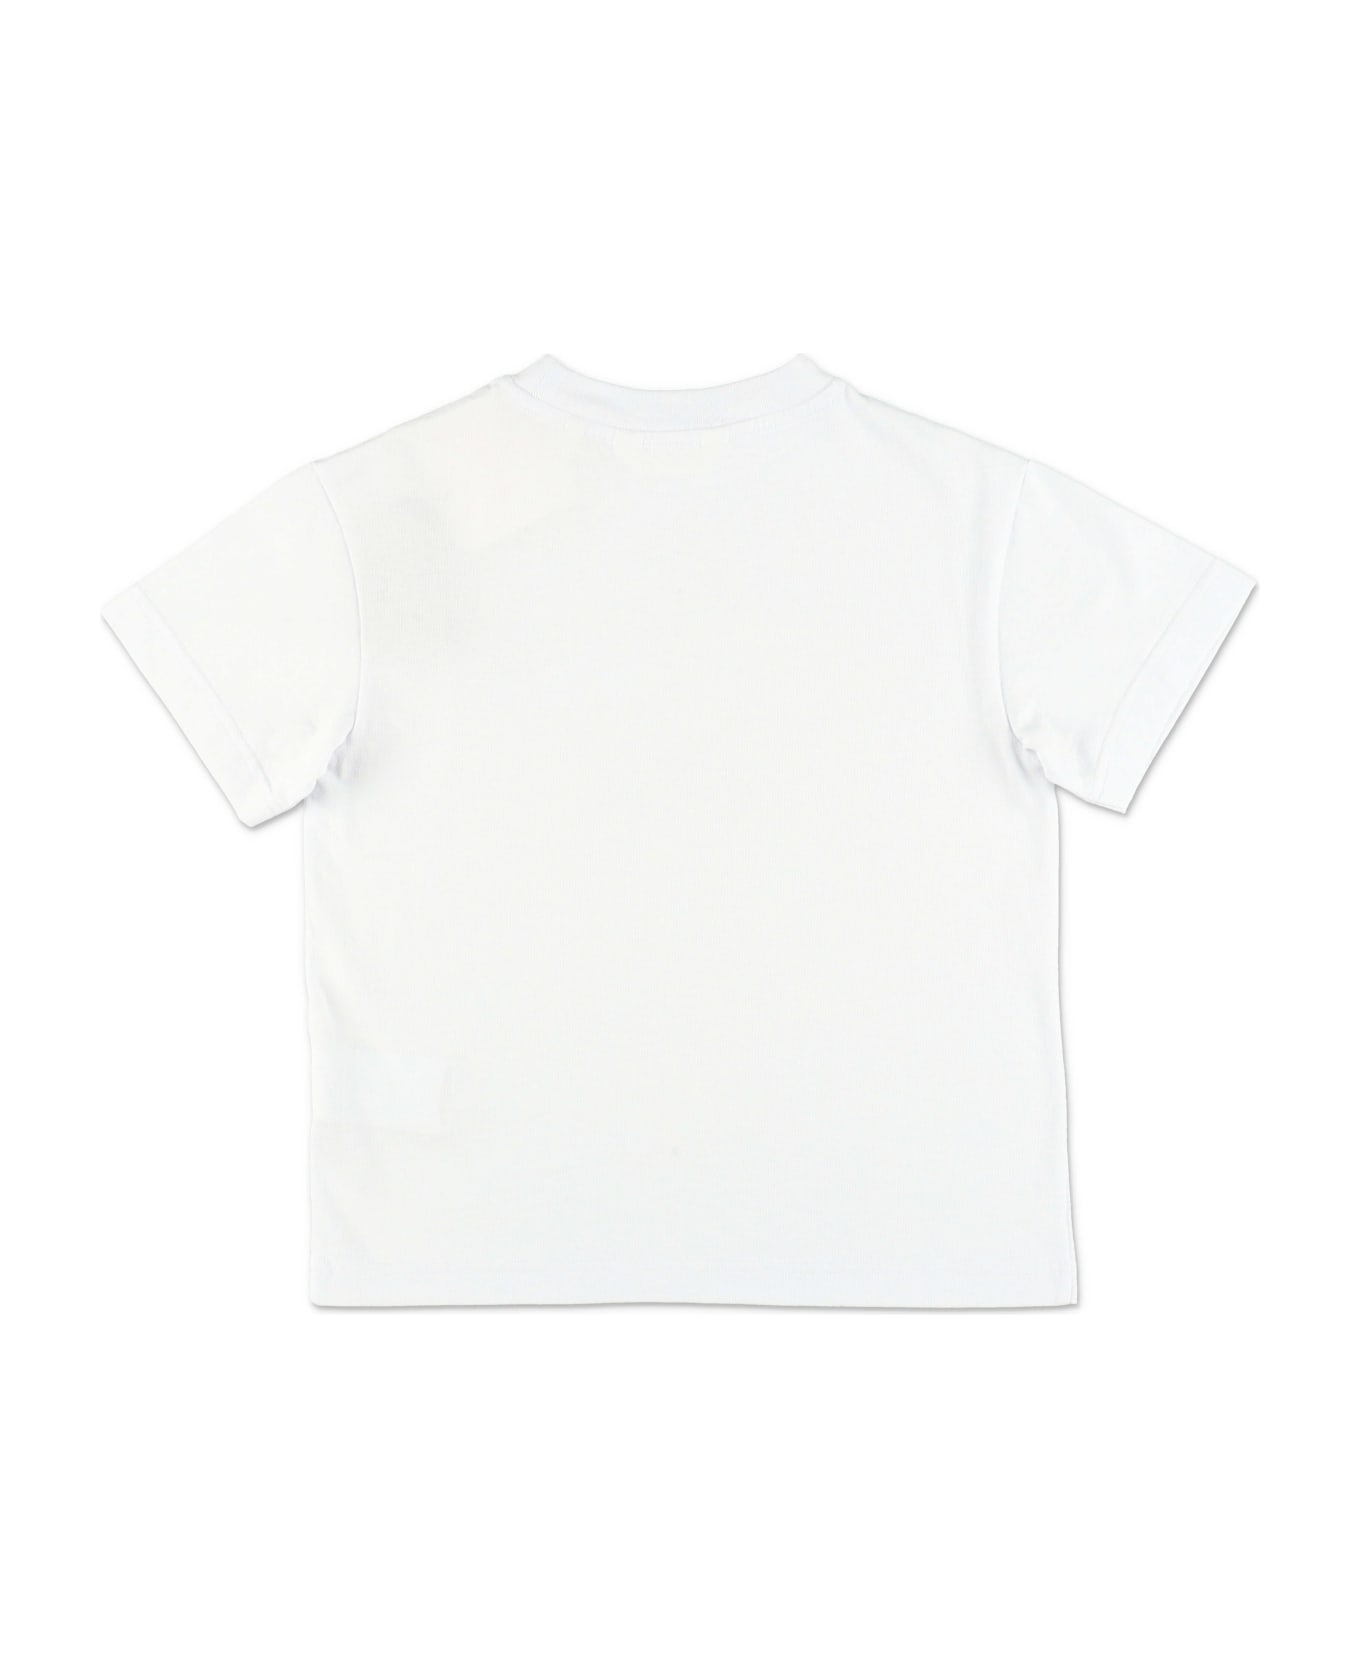 Palm Angels T-shirt Bianca In Jersey Di Cotone Bambino - Bianco